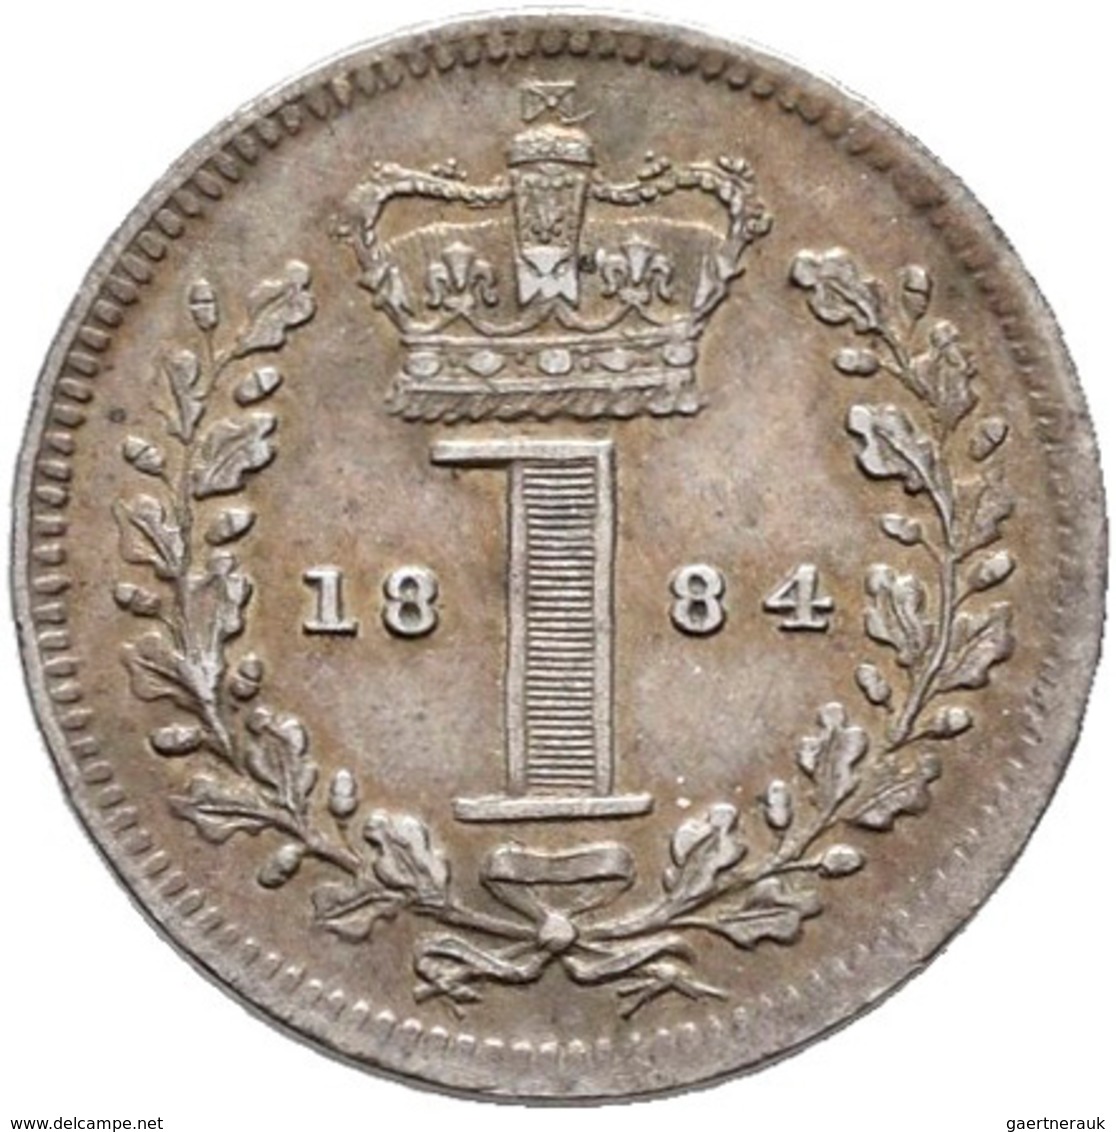 Großbritannien: Victoria 1837-1901: Maundy Set 1,2,3,4 Pence 1845, sehr schön-vorzüglich, vorzüglich